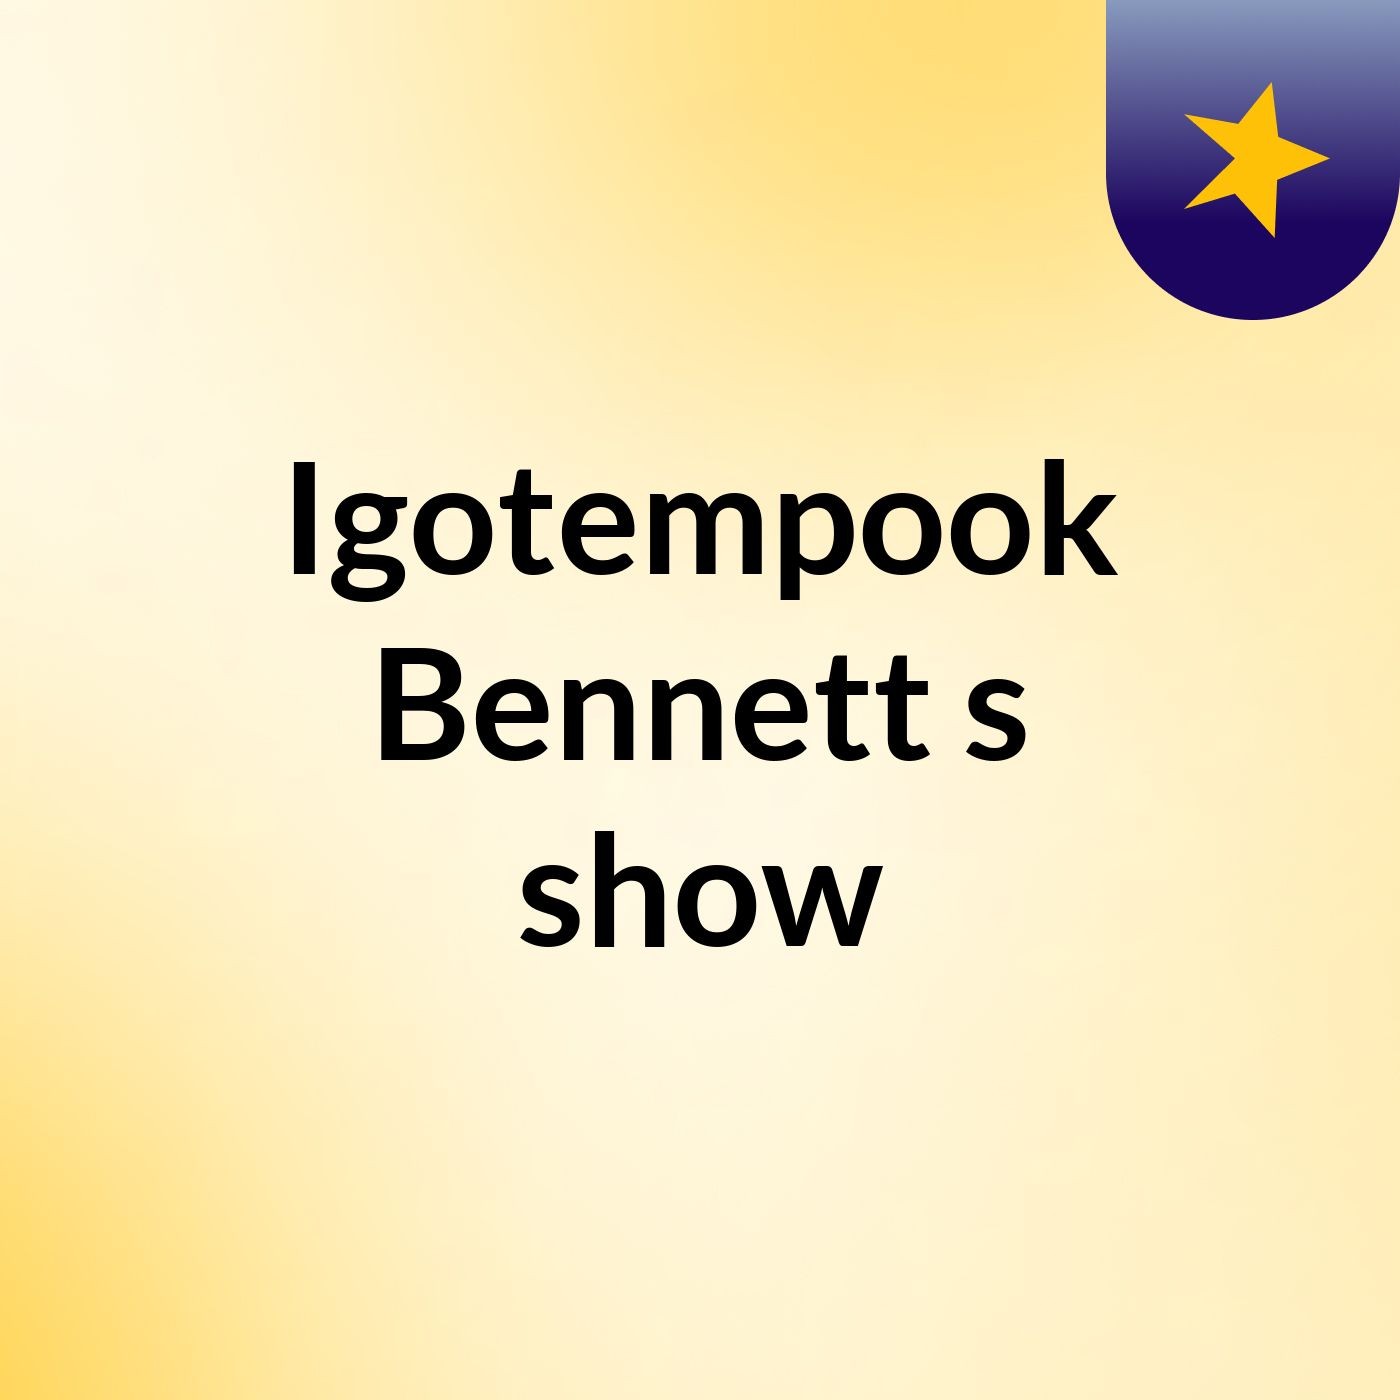 Episode 2 - Igotempook Bennett's show